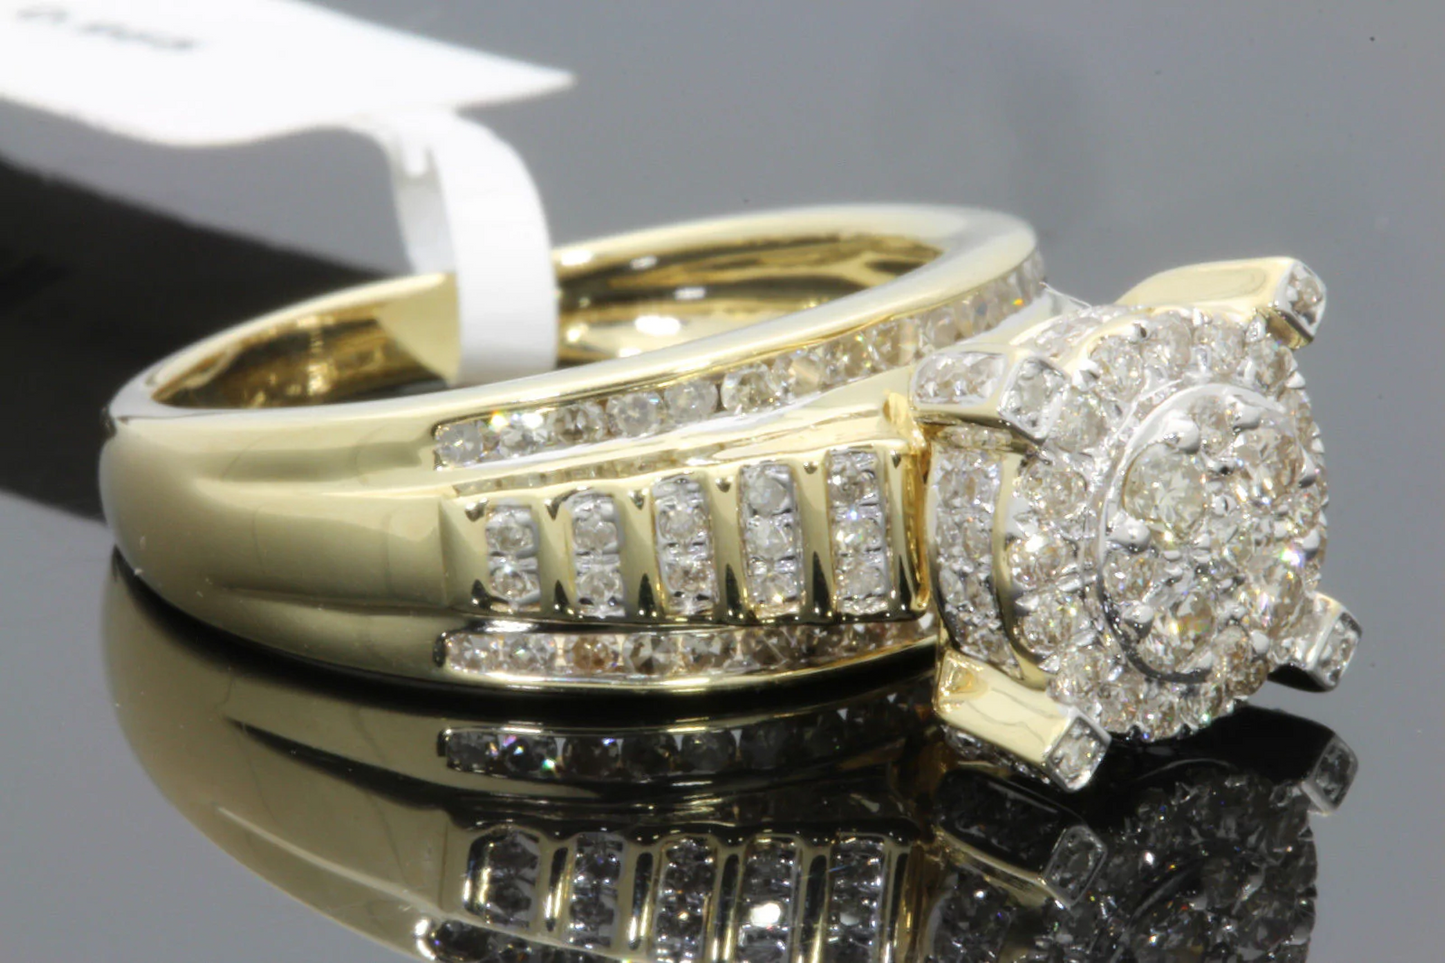 10K YELLOW GOLD 1 CARAT WOMEN REAL DIAMOND ENGAGEMENT RING WEDDING BRIDAL RING / SKU 13228R-YG